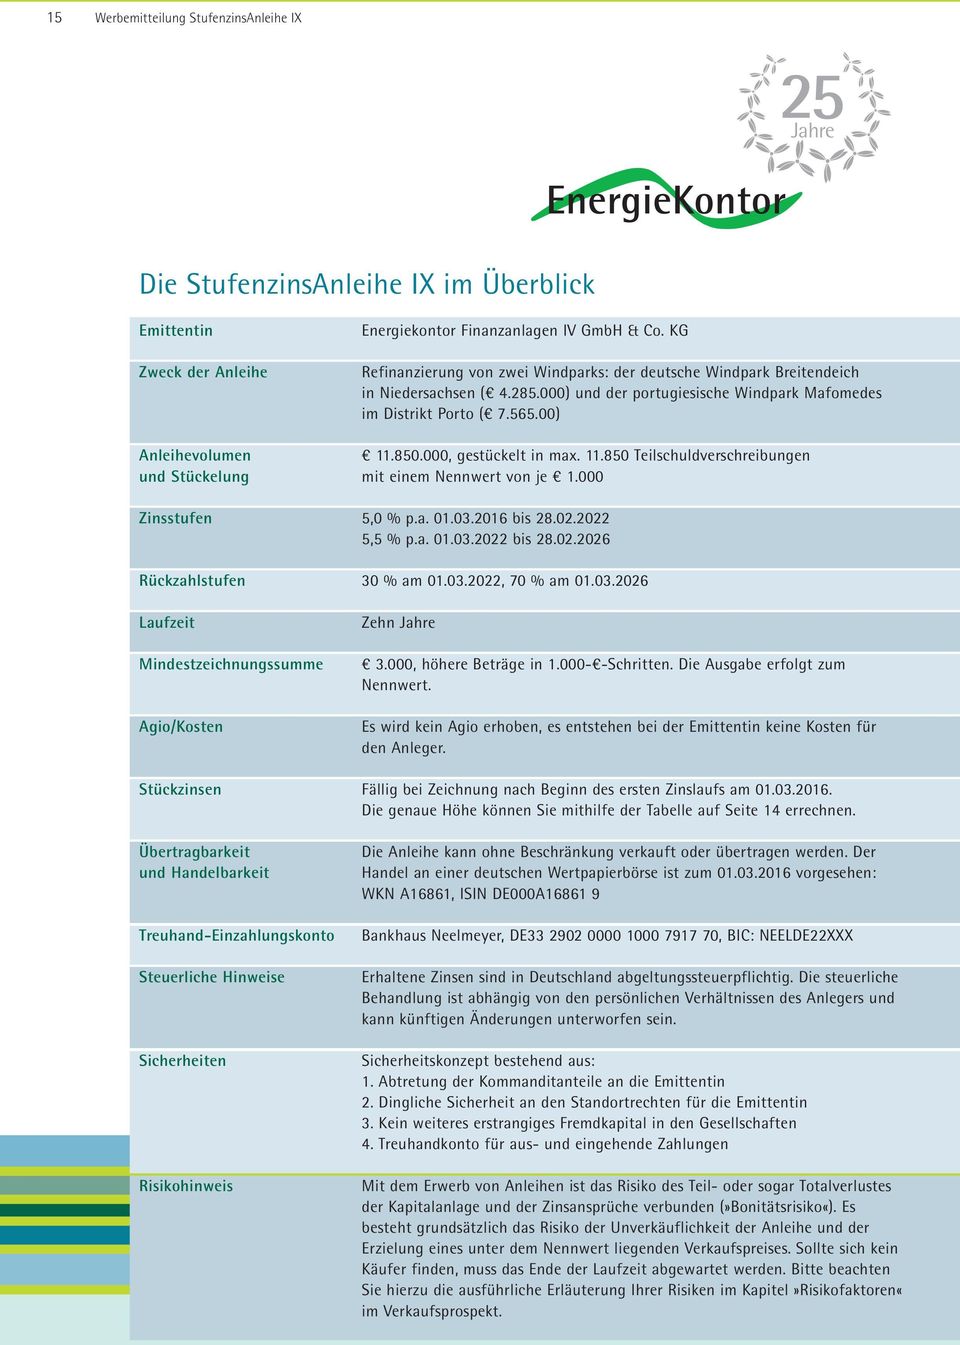 KG Refinanzierung von zwei Windparks: der deutsche Windpark Breitendeich in Niedersachsen ( 4.28.000) und der portugiesische Windpark Mafomedes im Distrikt Porto ( 7.6.00) 11.80.